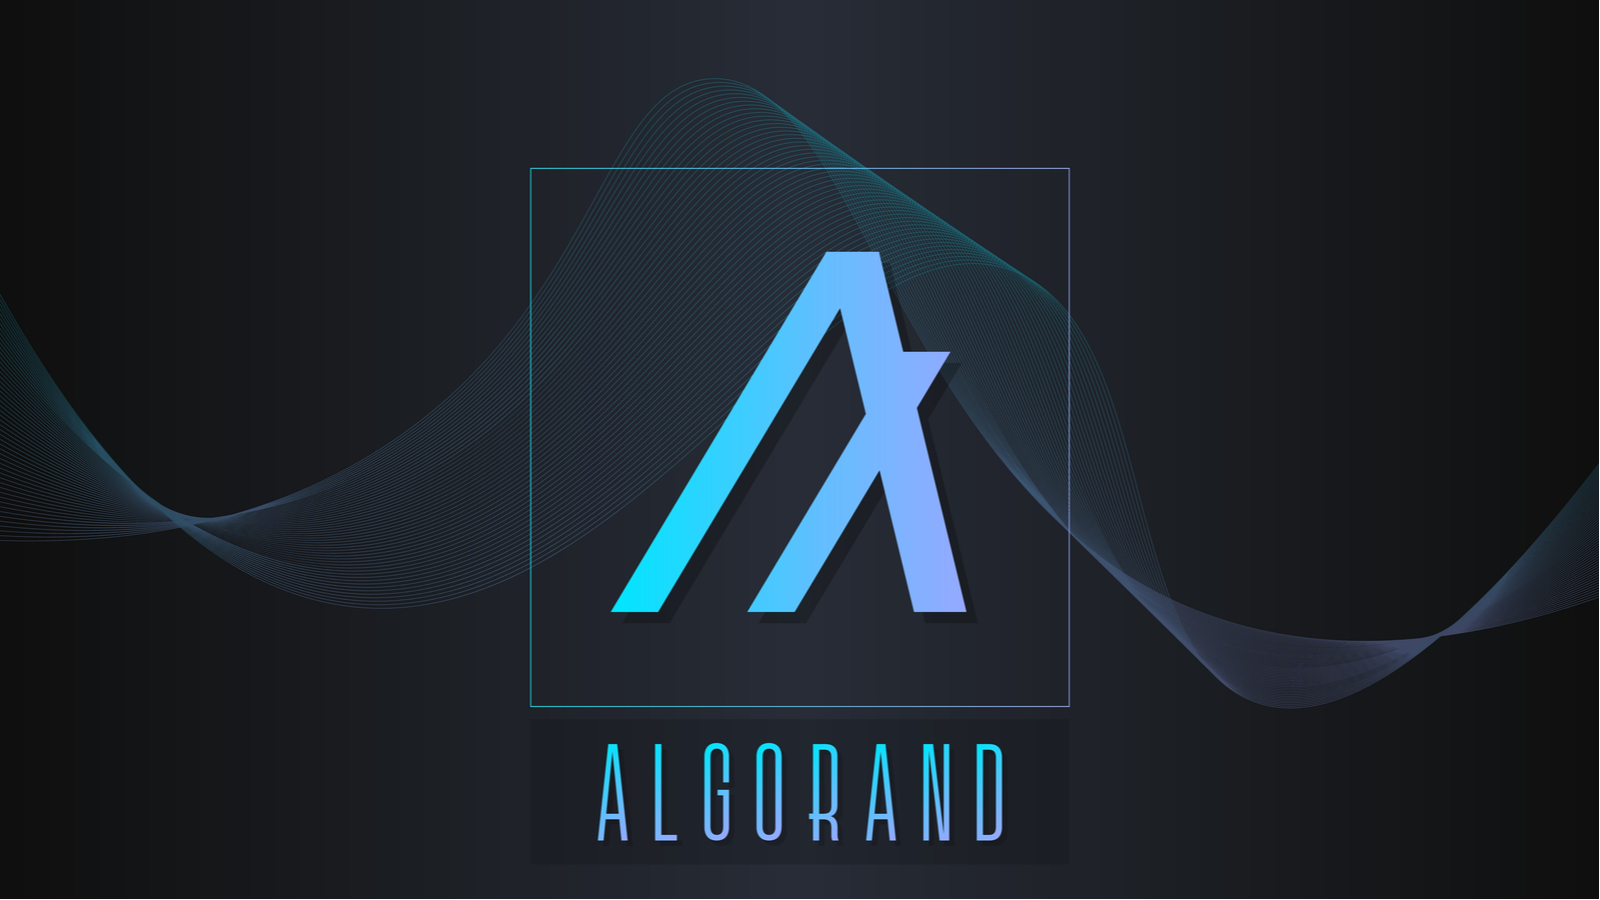 Logotipo de Algorand en azul claro contra un fondo simple de aspecto futurista de color oscuro Predicciones de precios de Algorand